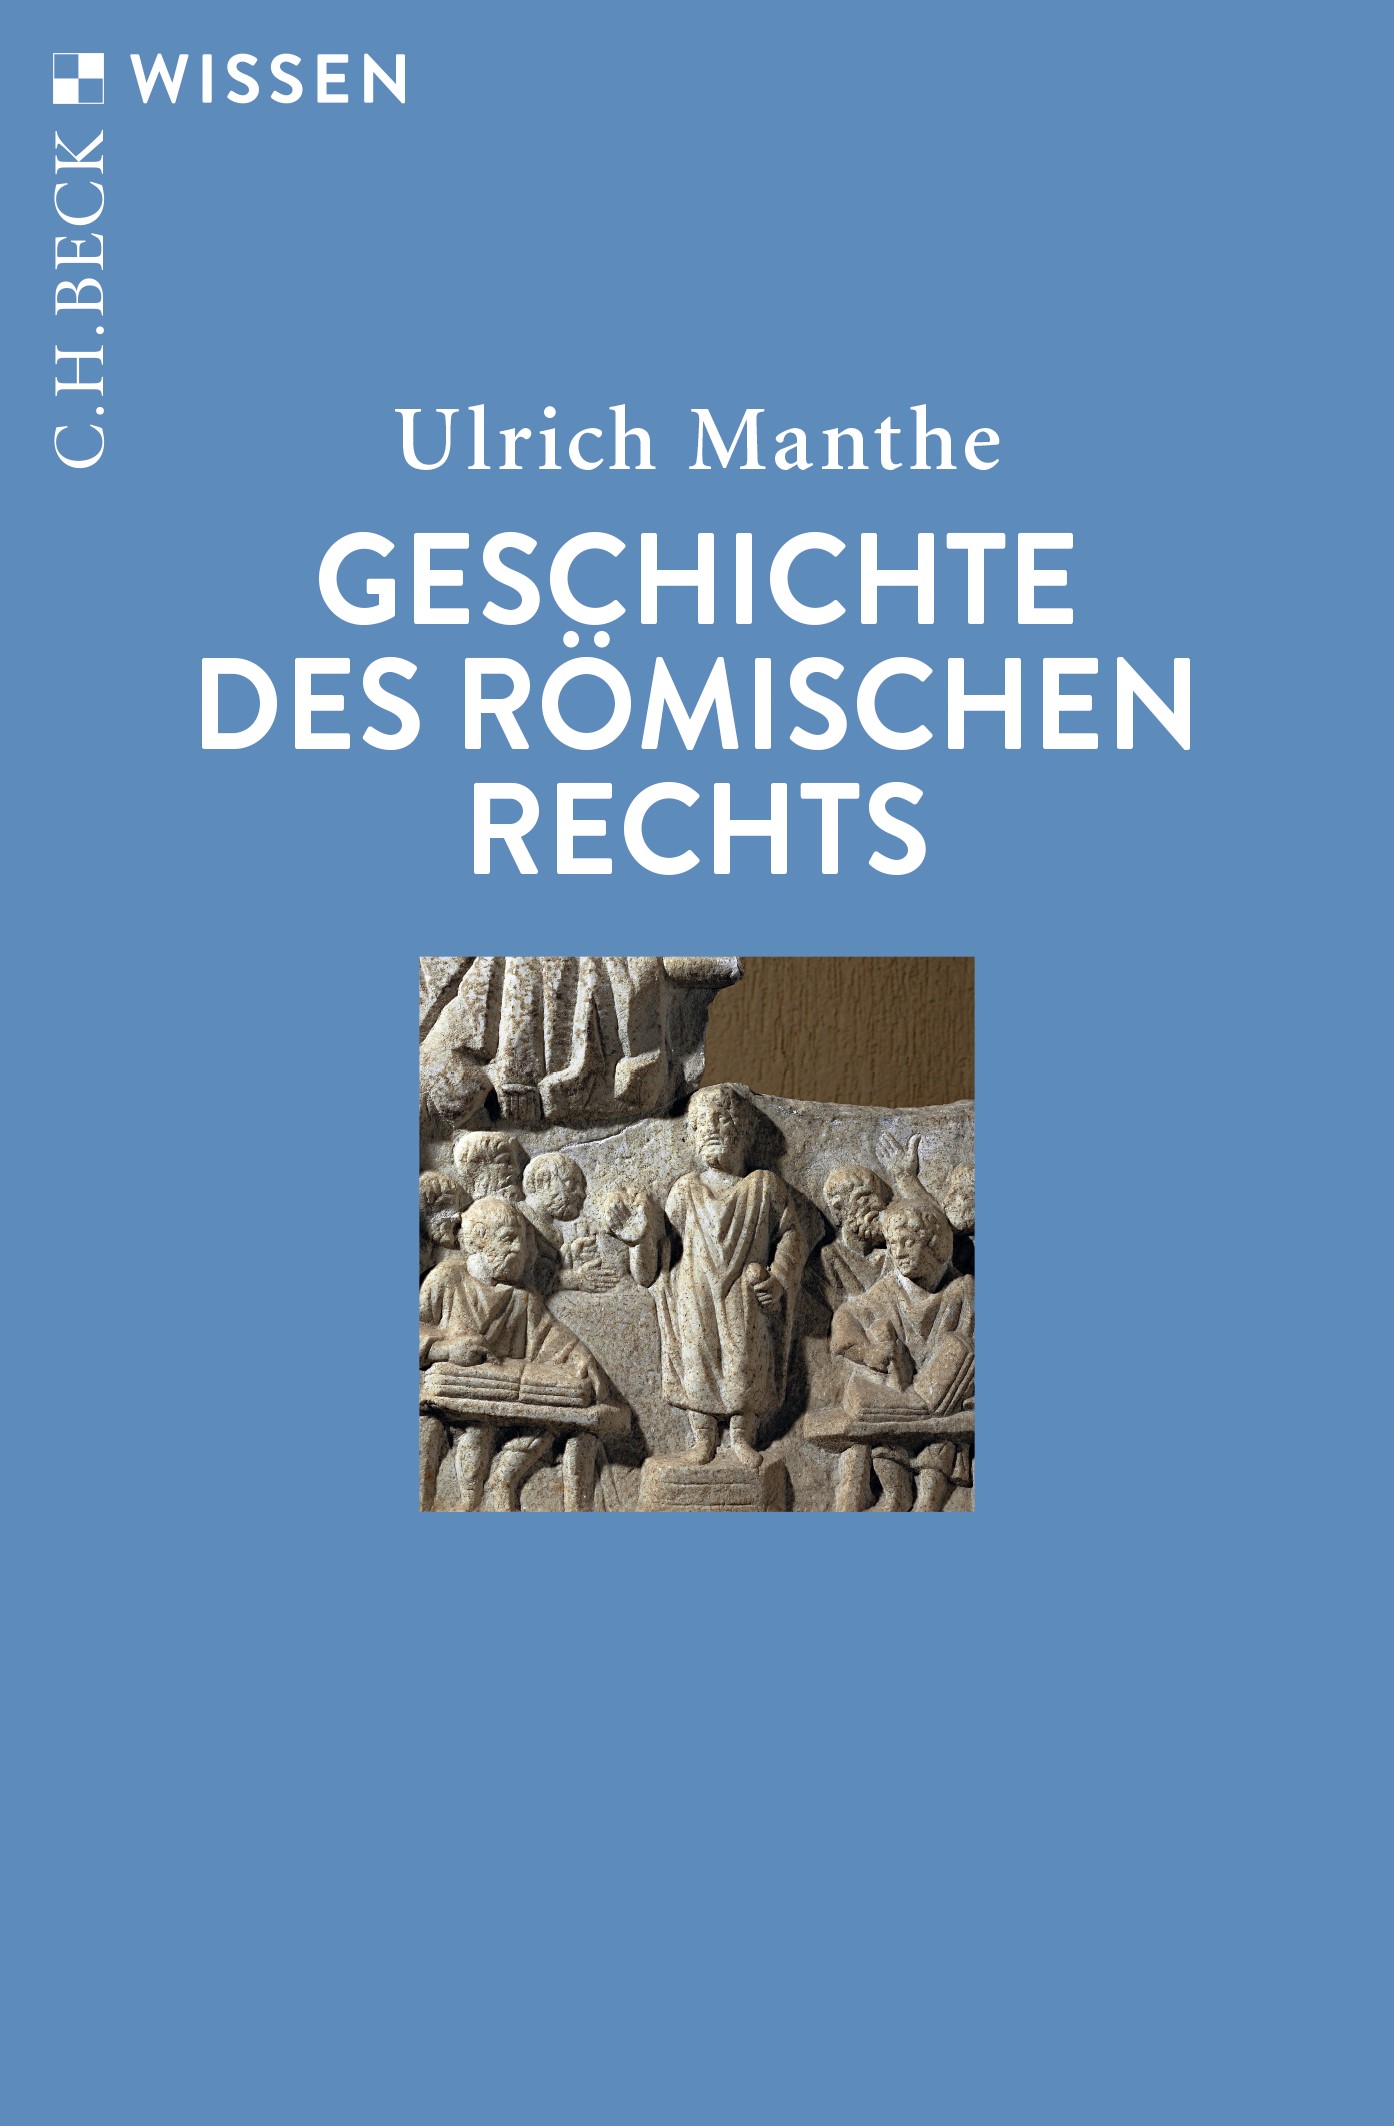 Cover: Manthe, Ulrich, Geschichte des römischen Rechts